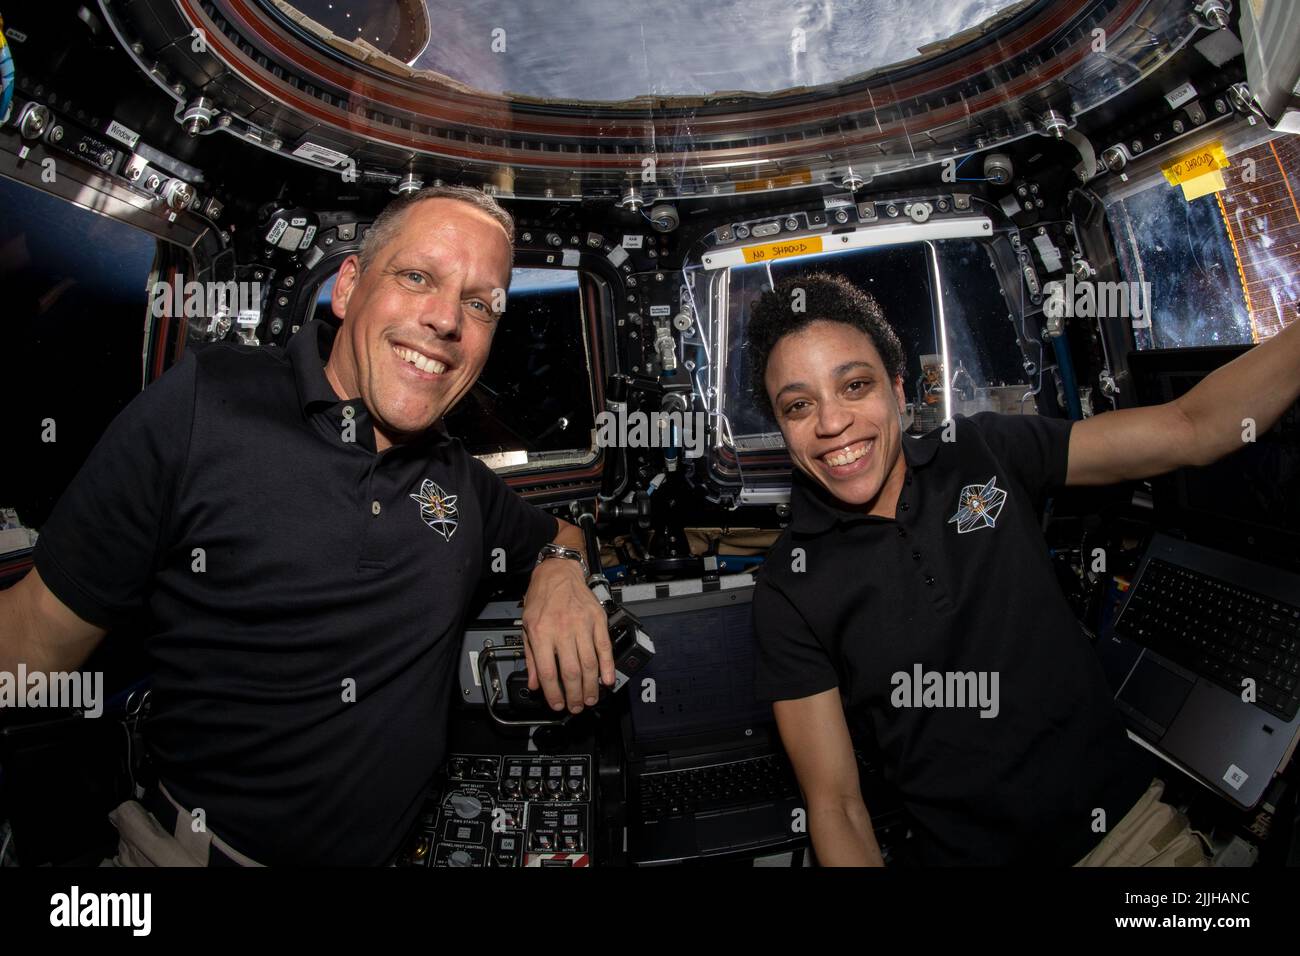 Los astronautas de la NASA Bob Hines y Jessica Watkins vigilan el acoplamiento del carguero espacial SpaceX Dragon desde el interior de la cúpula a bordo de la Estación Espacial Internacional, 16 de julio de 2022 en órbita terrestre. Foto de stock